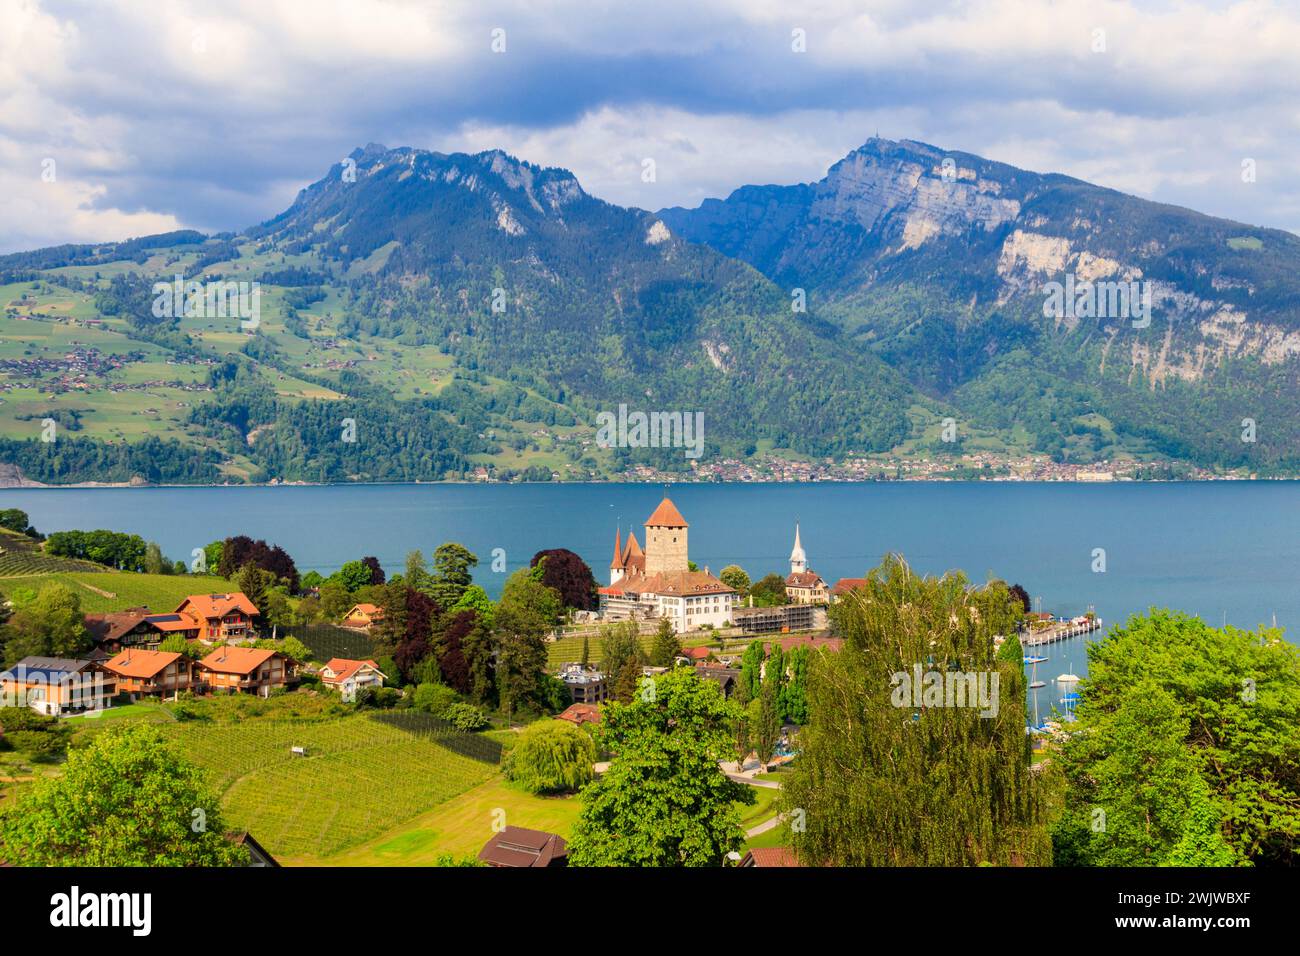 Veduta aerea della città di Spiez con il castello di Spiez e il lago Thun nell'Oberland Bernese, Svizzera Foto Stock